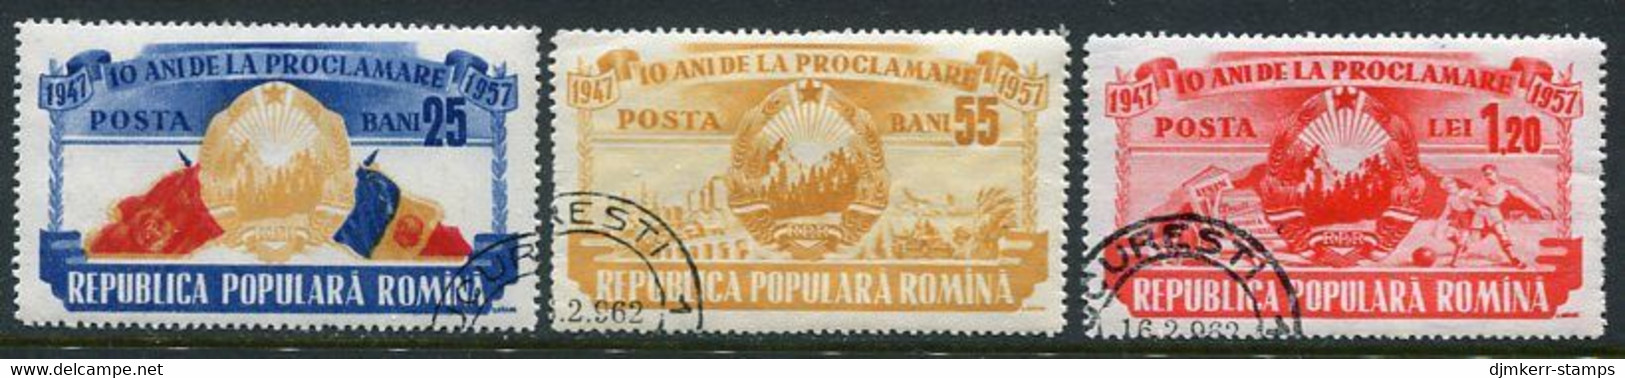 ROMANIA 1957 Anniversary Of Republic Used.  Michel 1694-96 - Usati